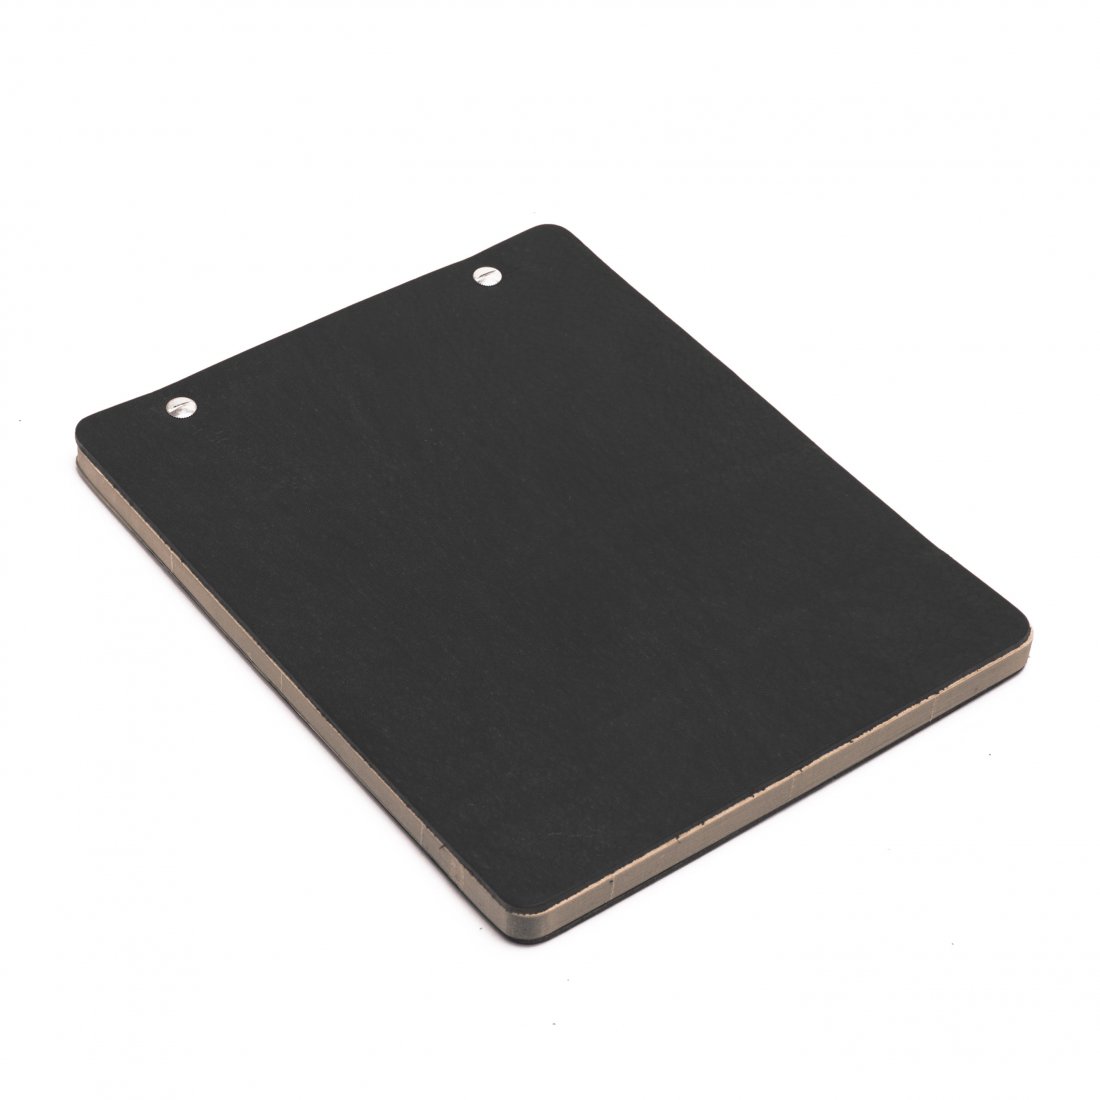 Leather iKRAFT notepad - Robusto